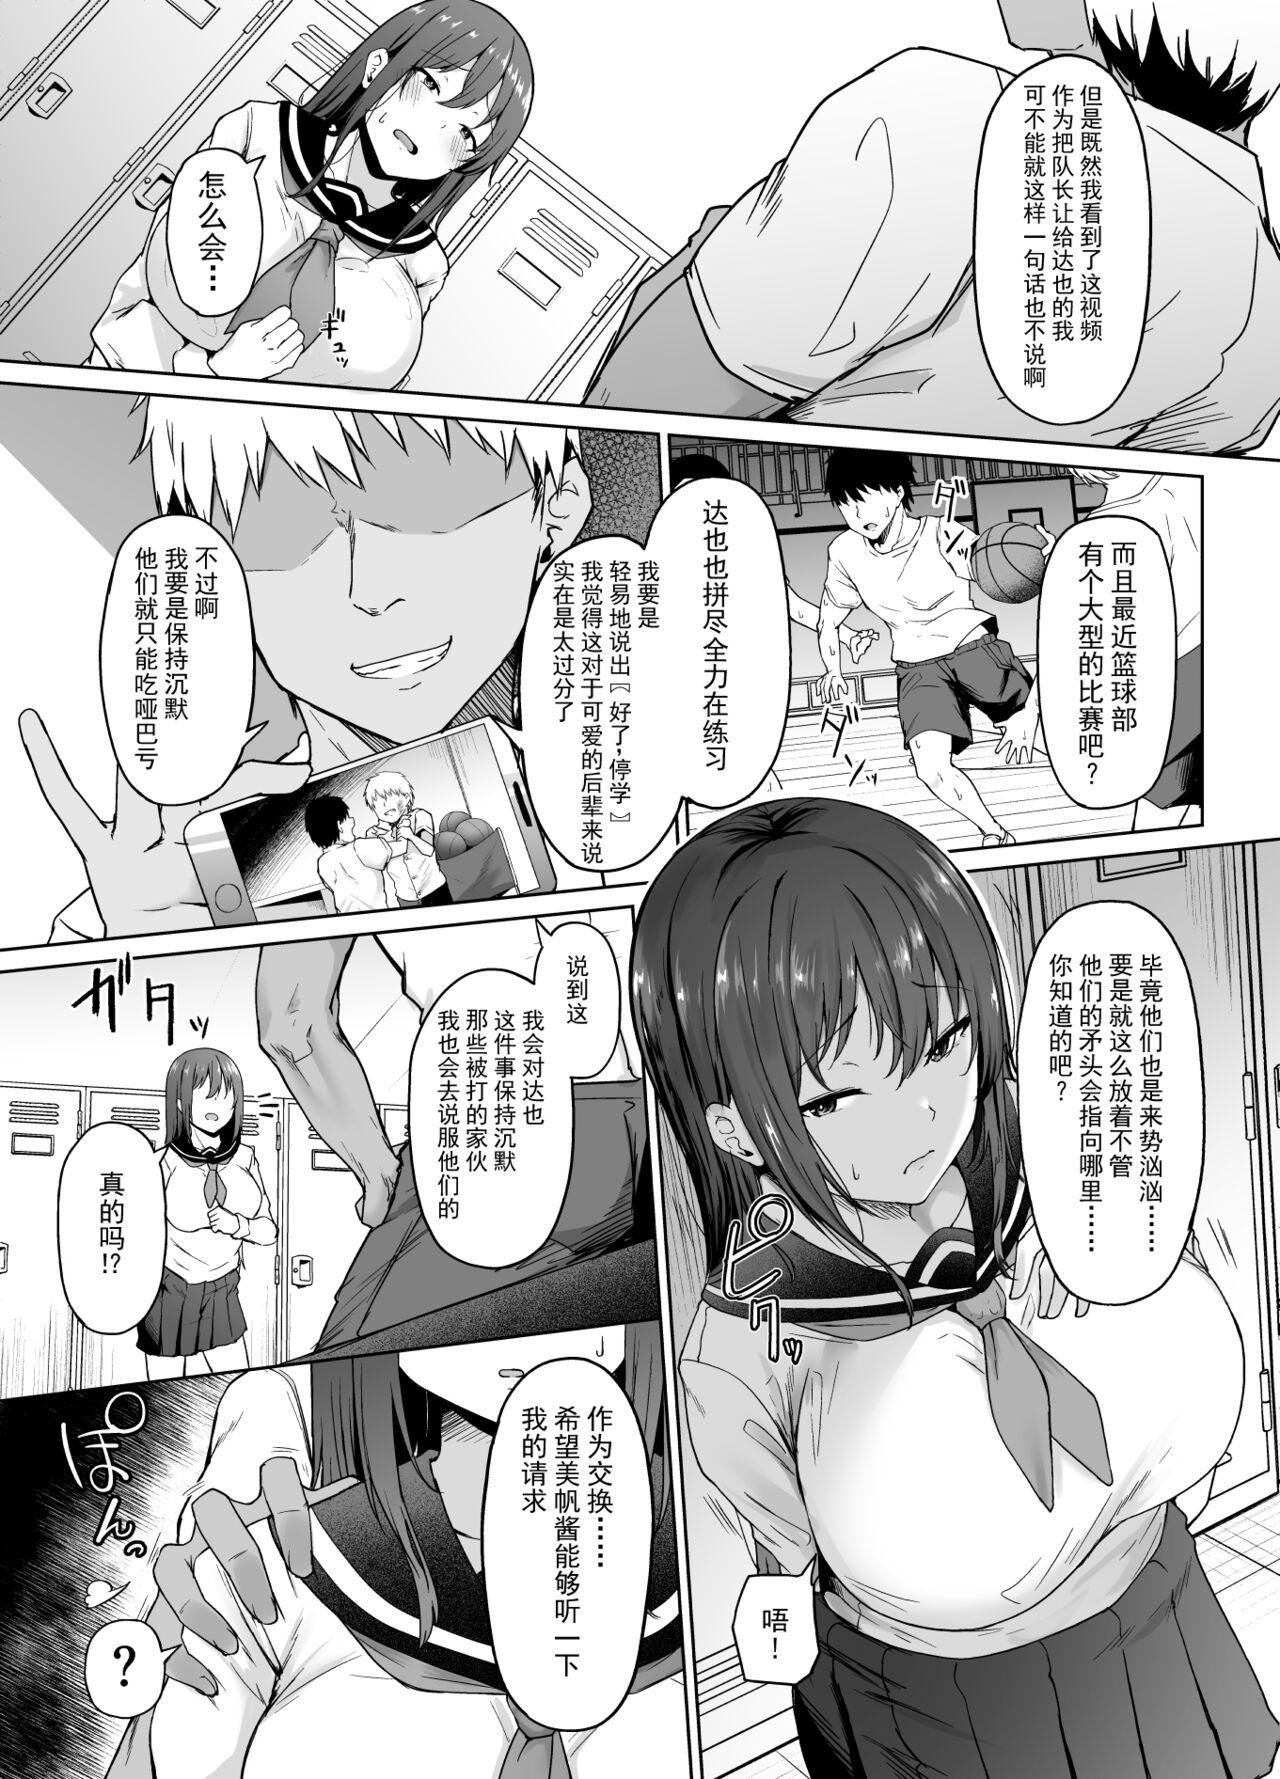 Analfucking Ichizu na Kanojo ga Ochiru Toki | 专一的她堕落的瞬间 - Original Emo - Page 6